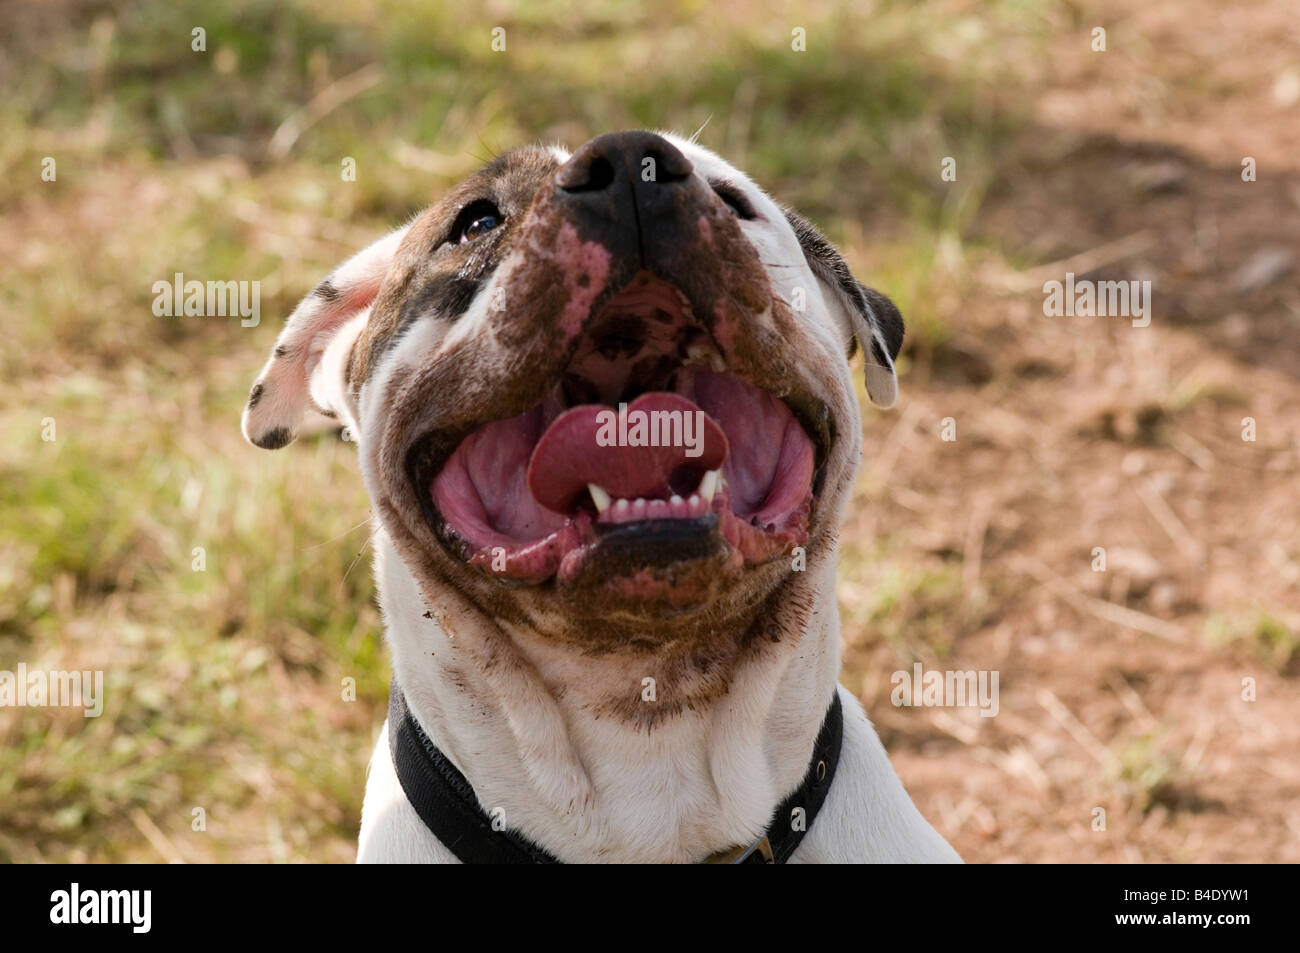 Loi sur les chiens dangereux chien pit-bull terrier Staffordshire Bull cercle vicieux combats agressifs dents morsure forte mâchoire Banque D'Images